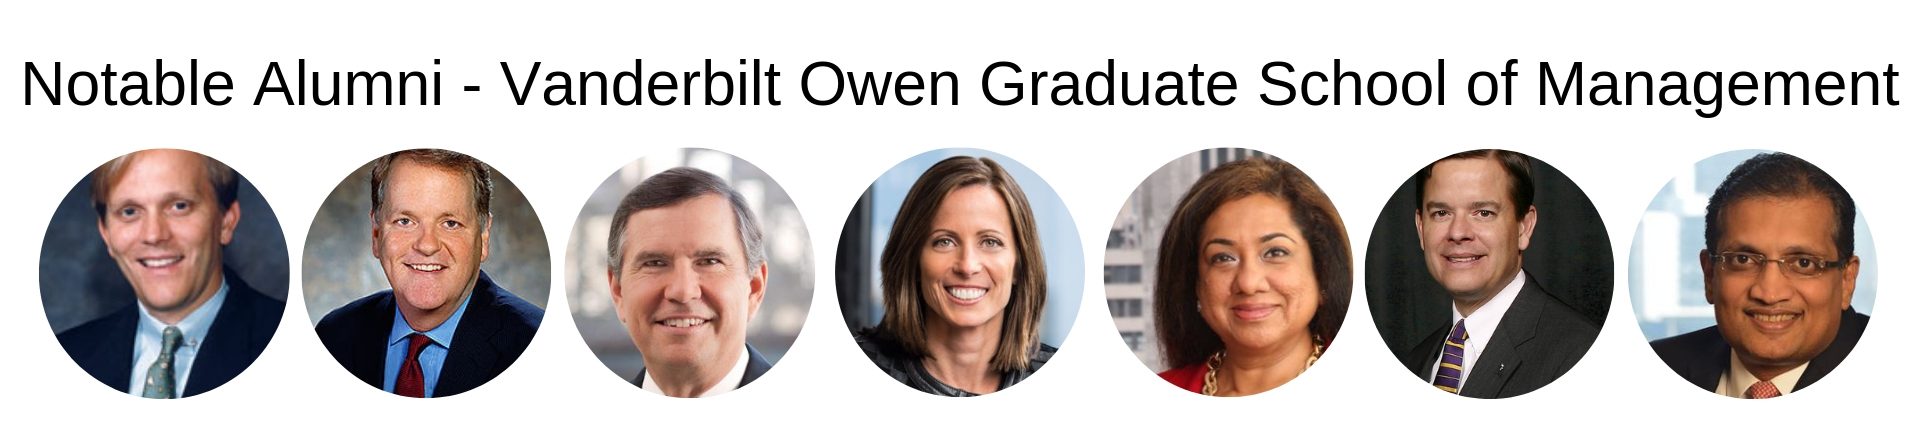 Vanderbilt MBA Program - Vanderbilt Owen Graduate School of Management - Notable Alumni